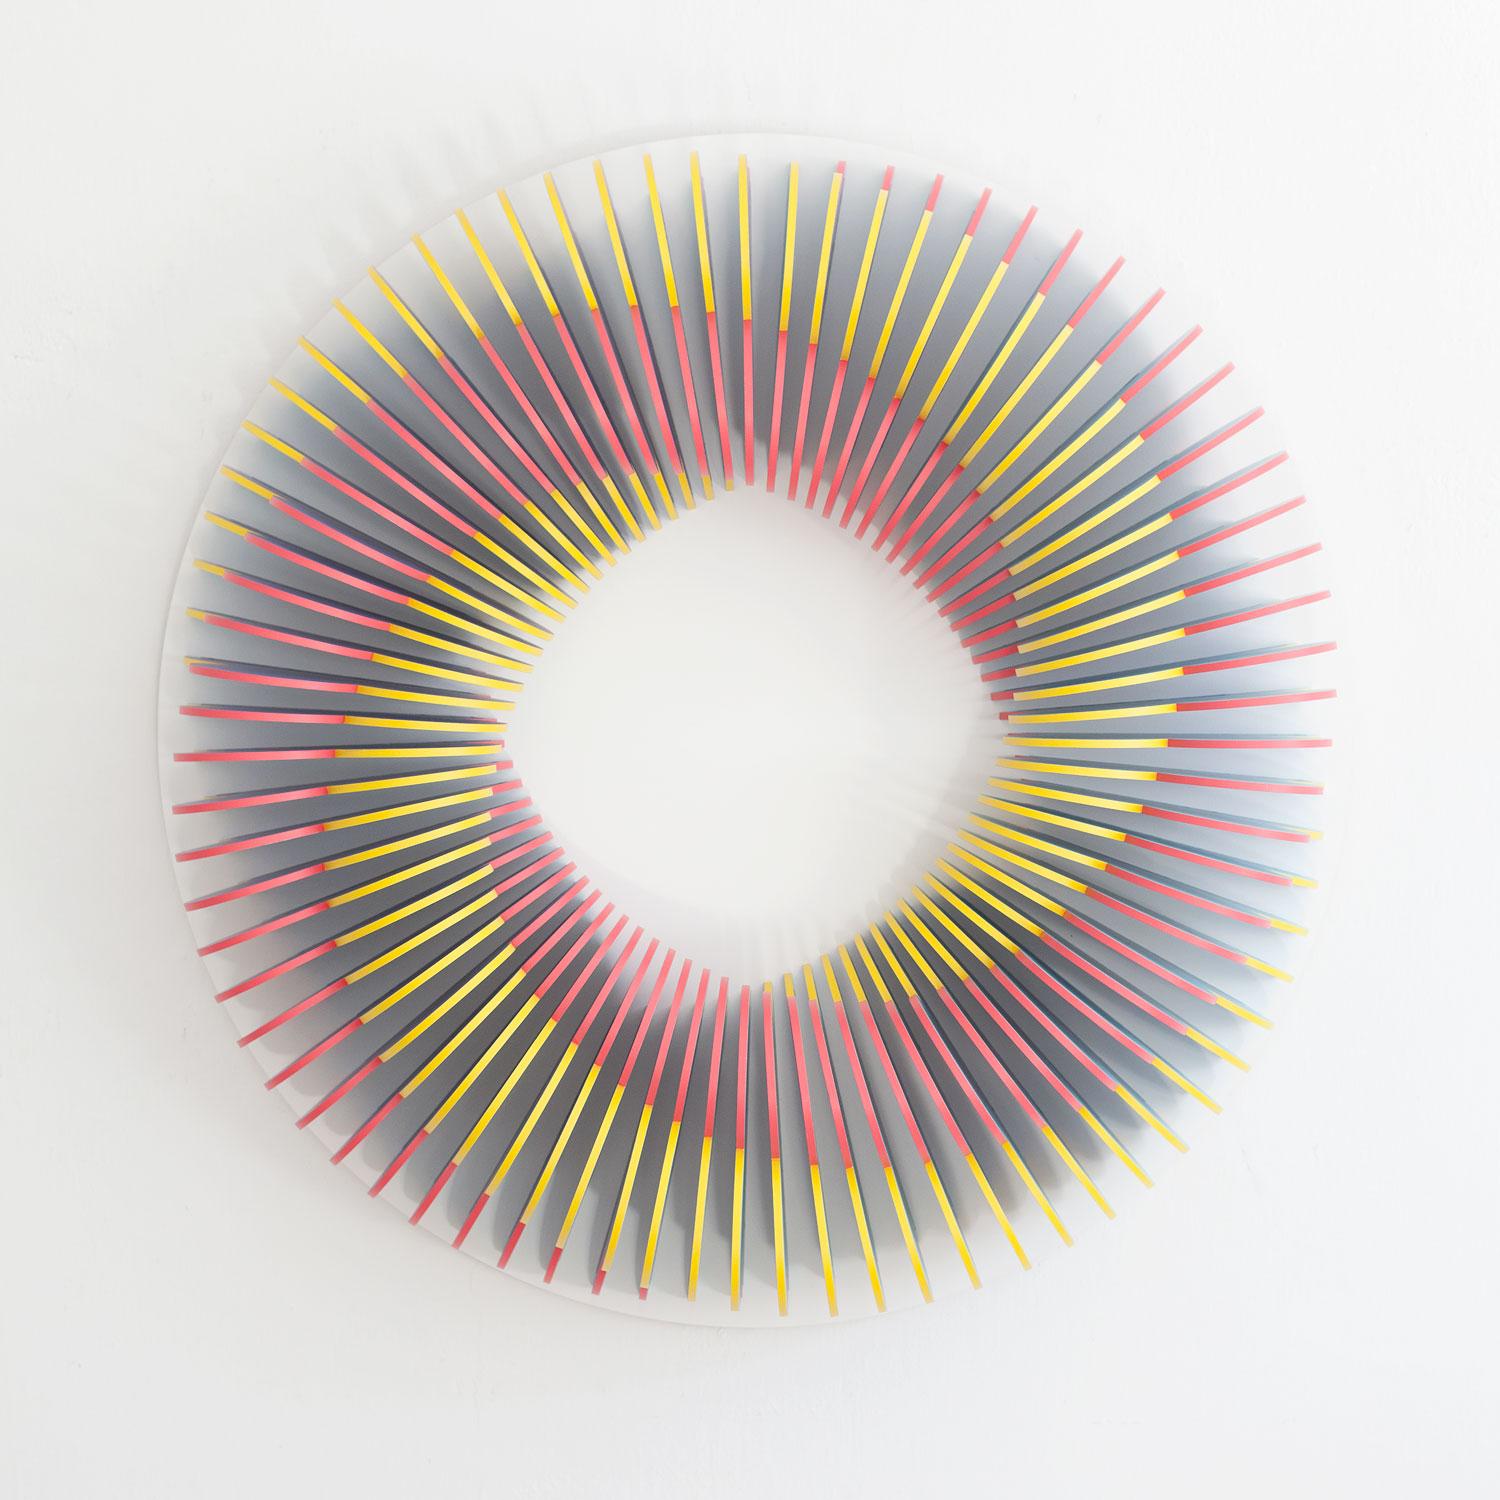 CC 103 - Pink yellow blue abstract geometric 3D wall circular sculpture - Sculpture by Anna Kruhelska